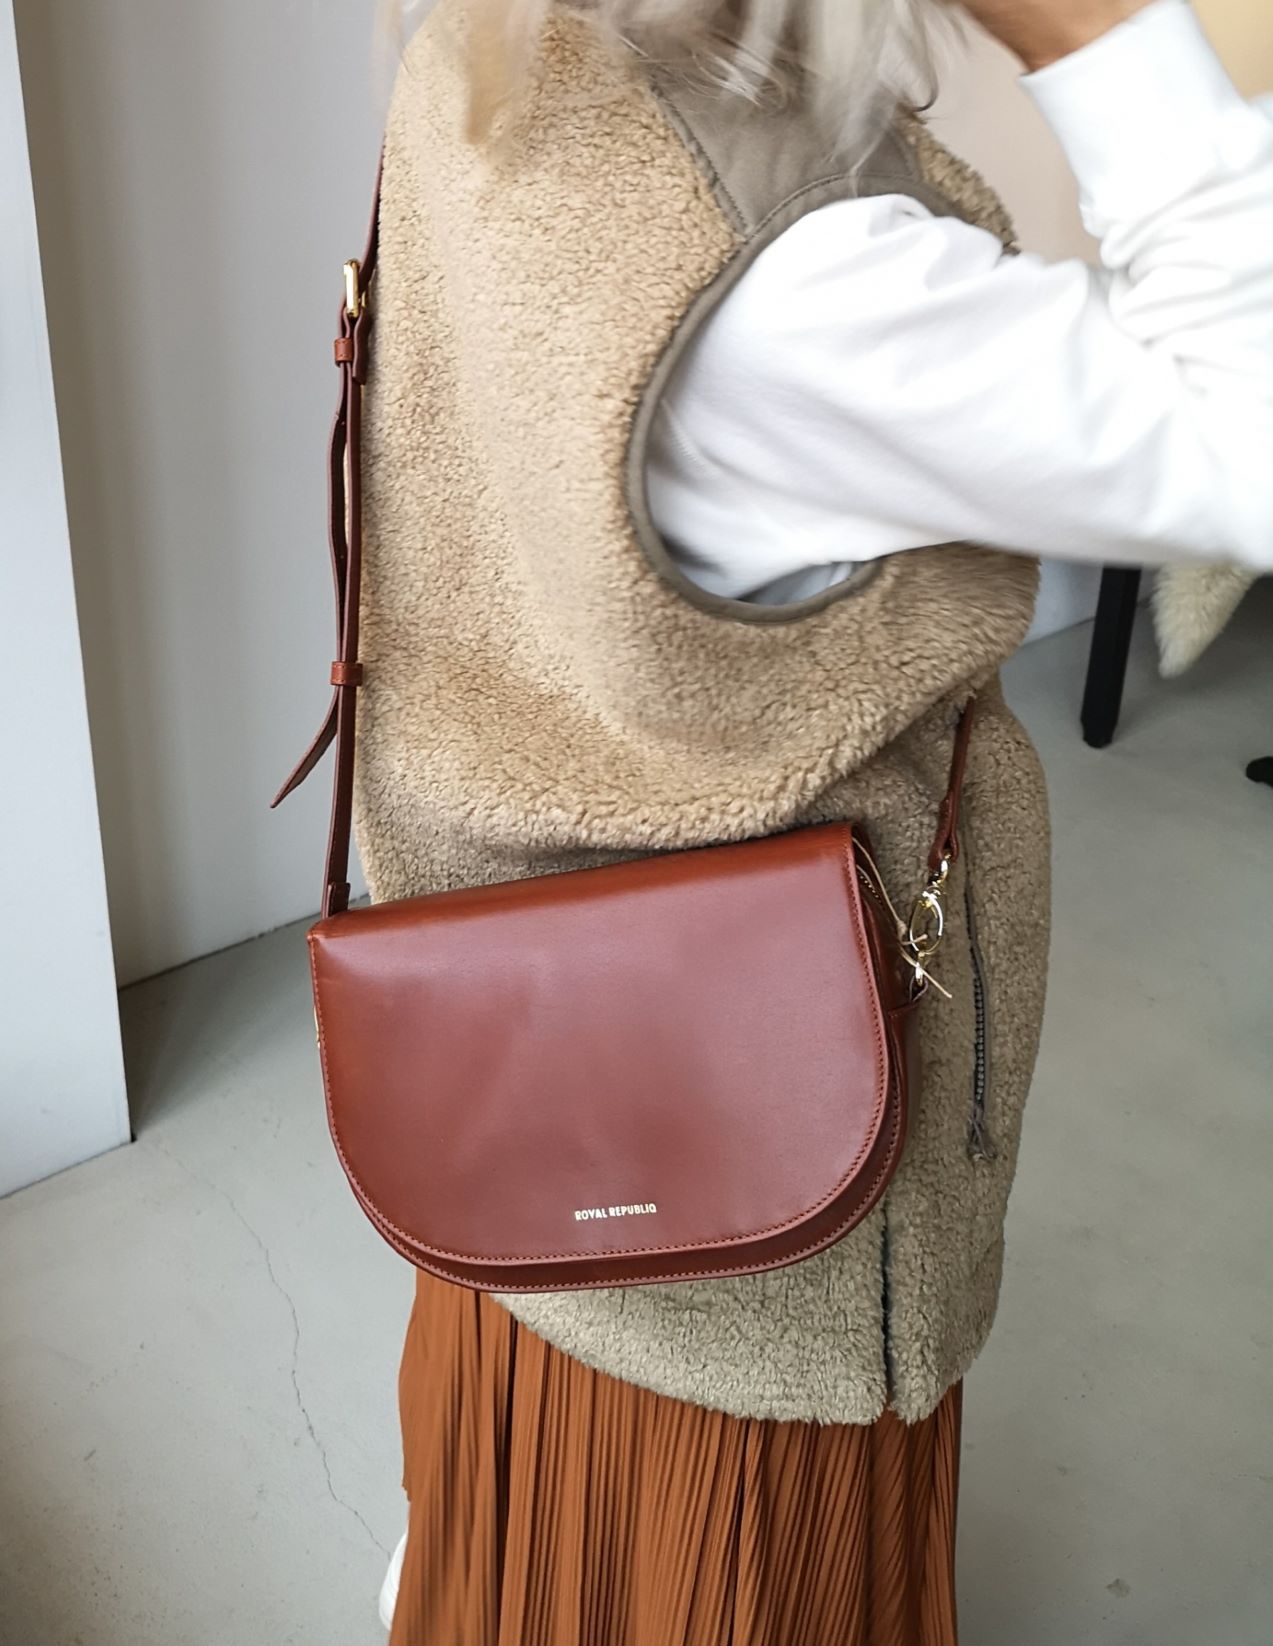 Reproduceren Belonend Carrière Royal Republiq Raf curve handbag Black or Brown – Studione9en